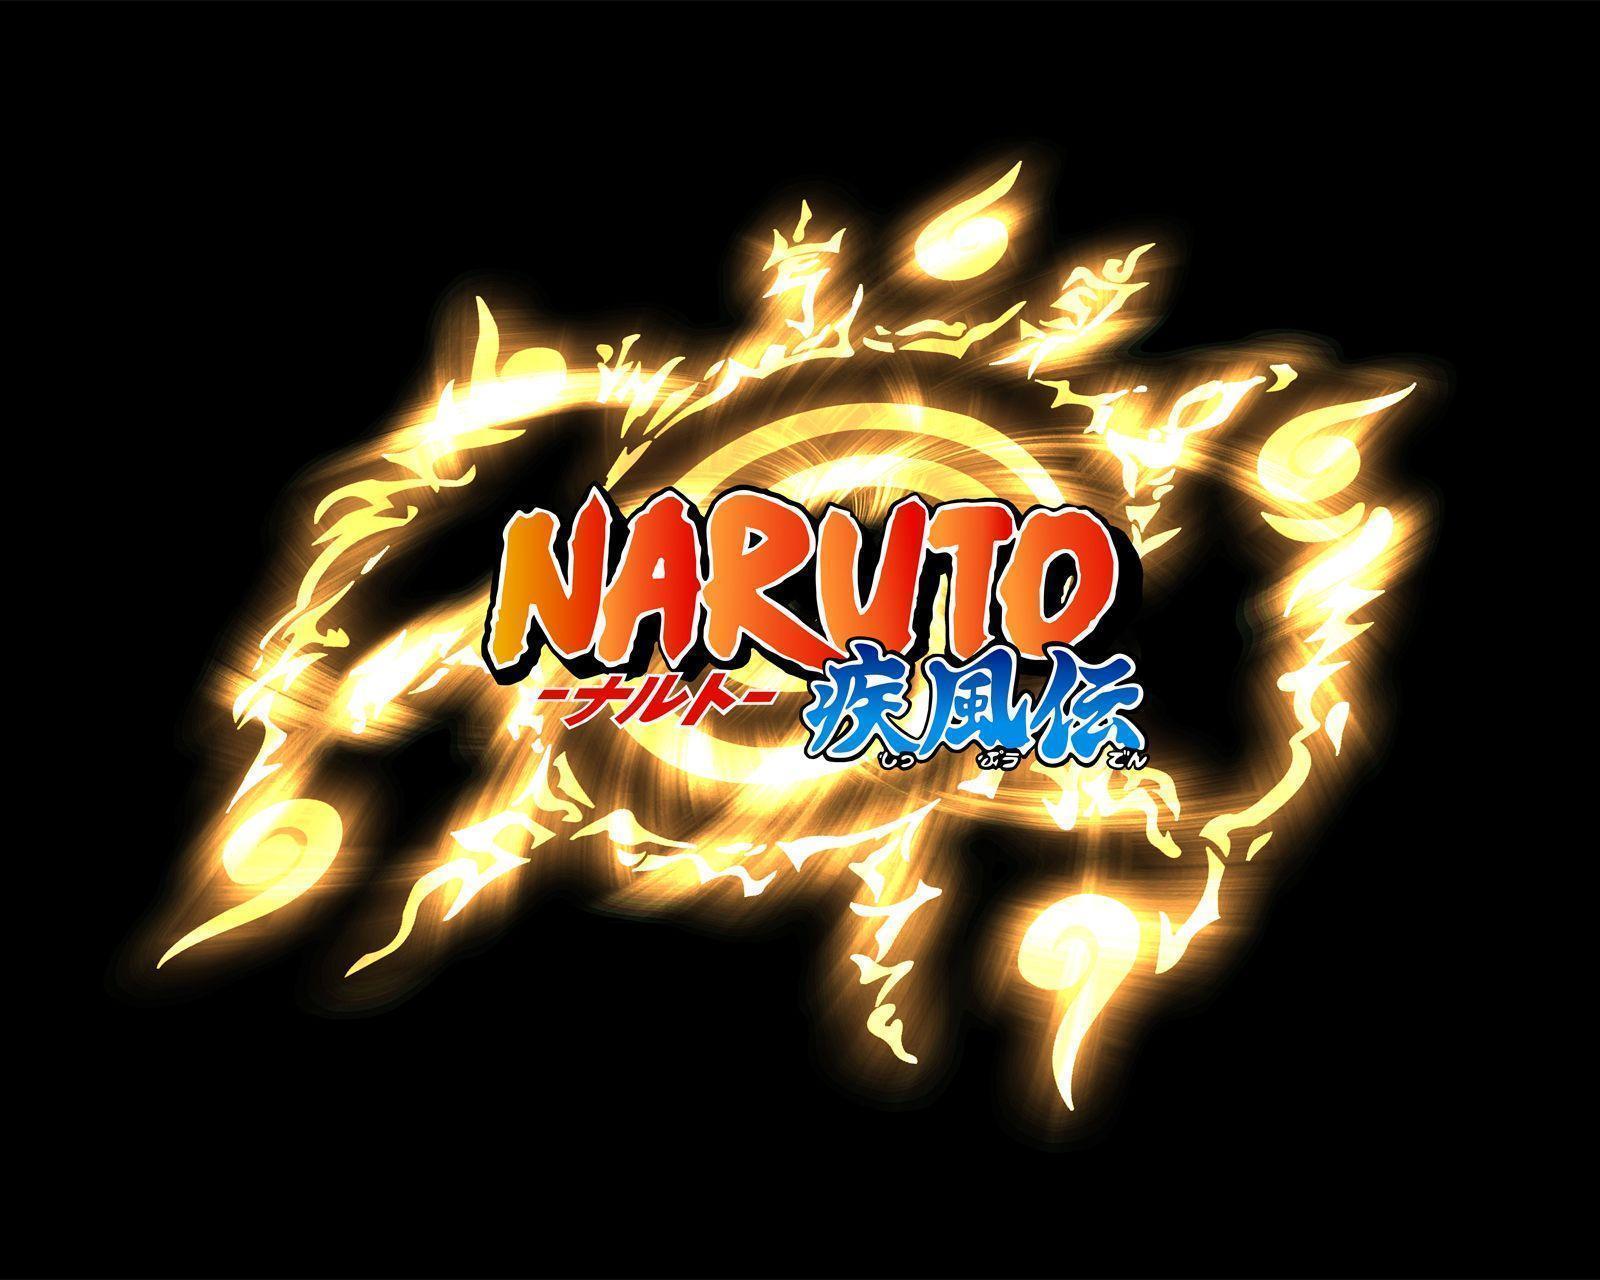 1600 x 1280 · jpeg - Naruto Logo Wallpapers - Wallpaper Cave